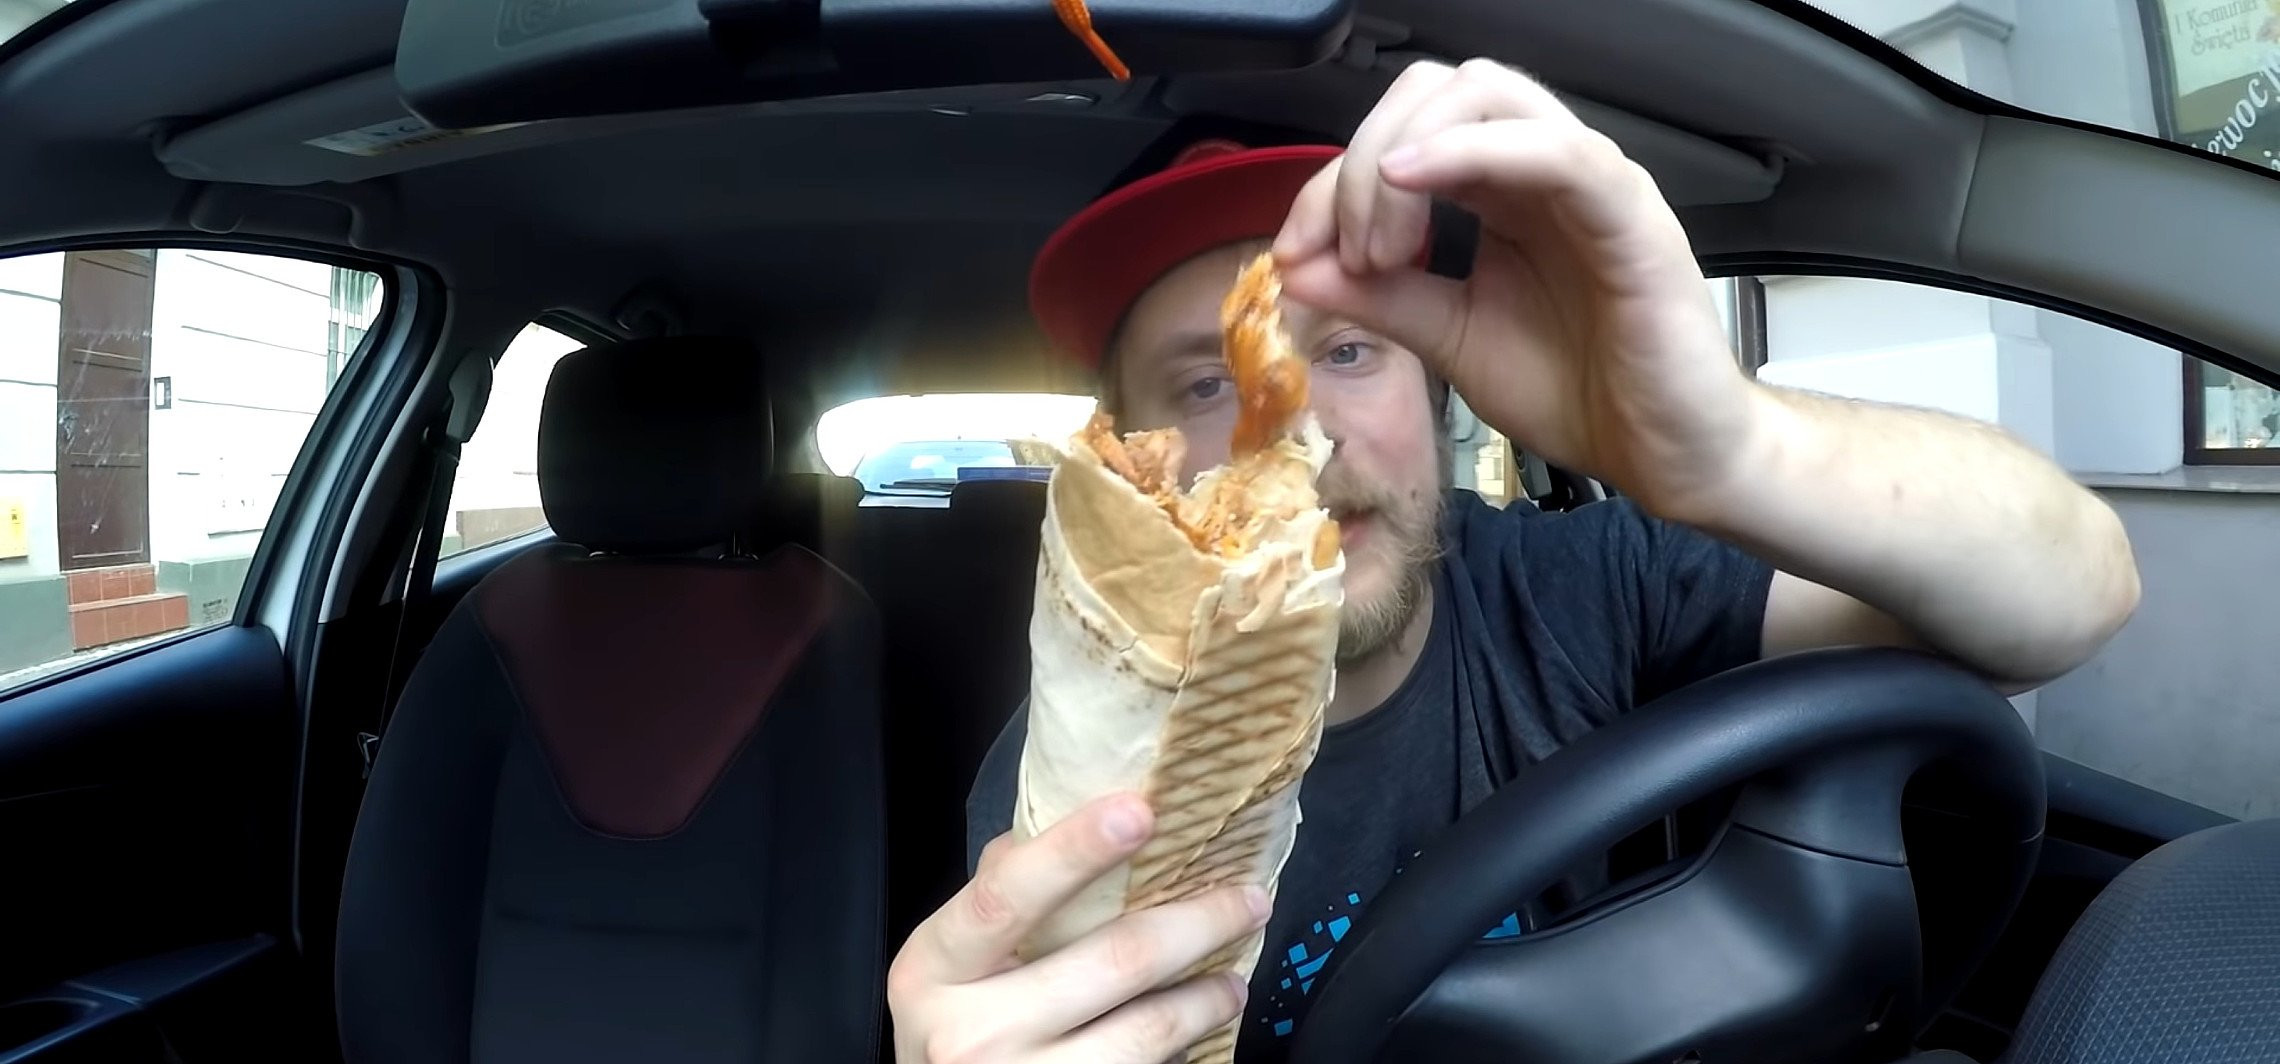 Inowrocław - Youtuber testuje największy kebab w Inowrocławiu